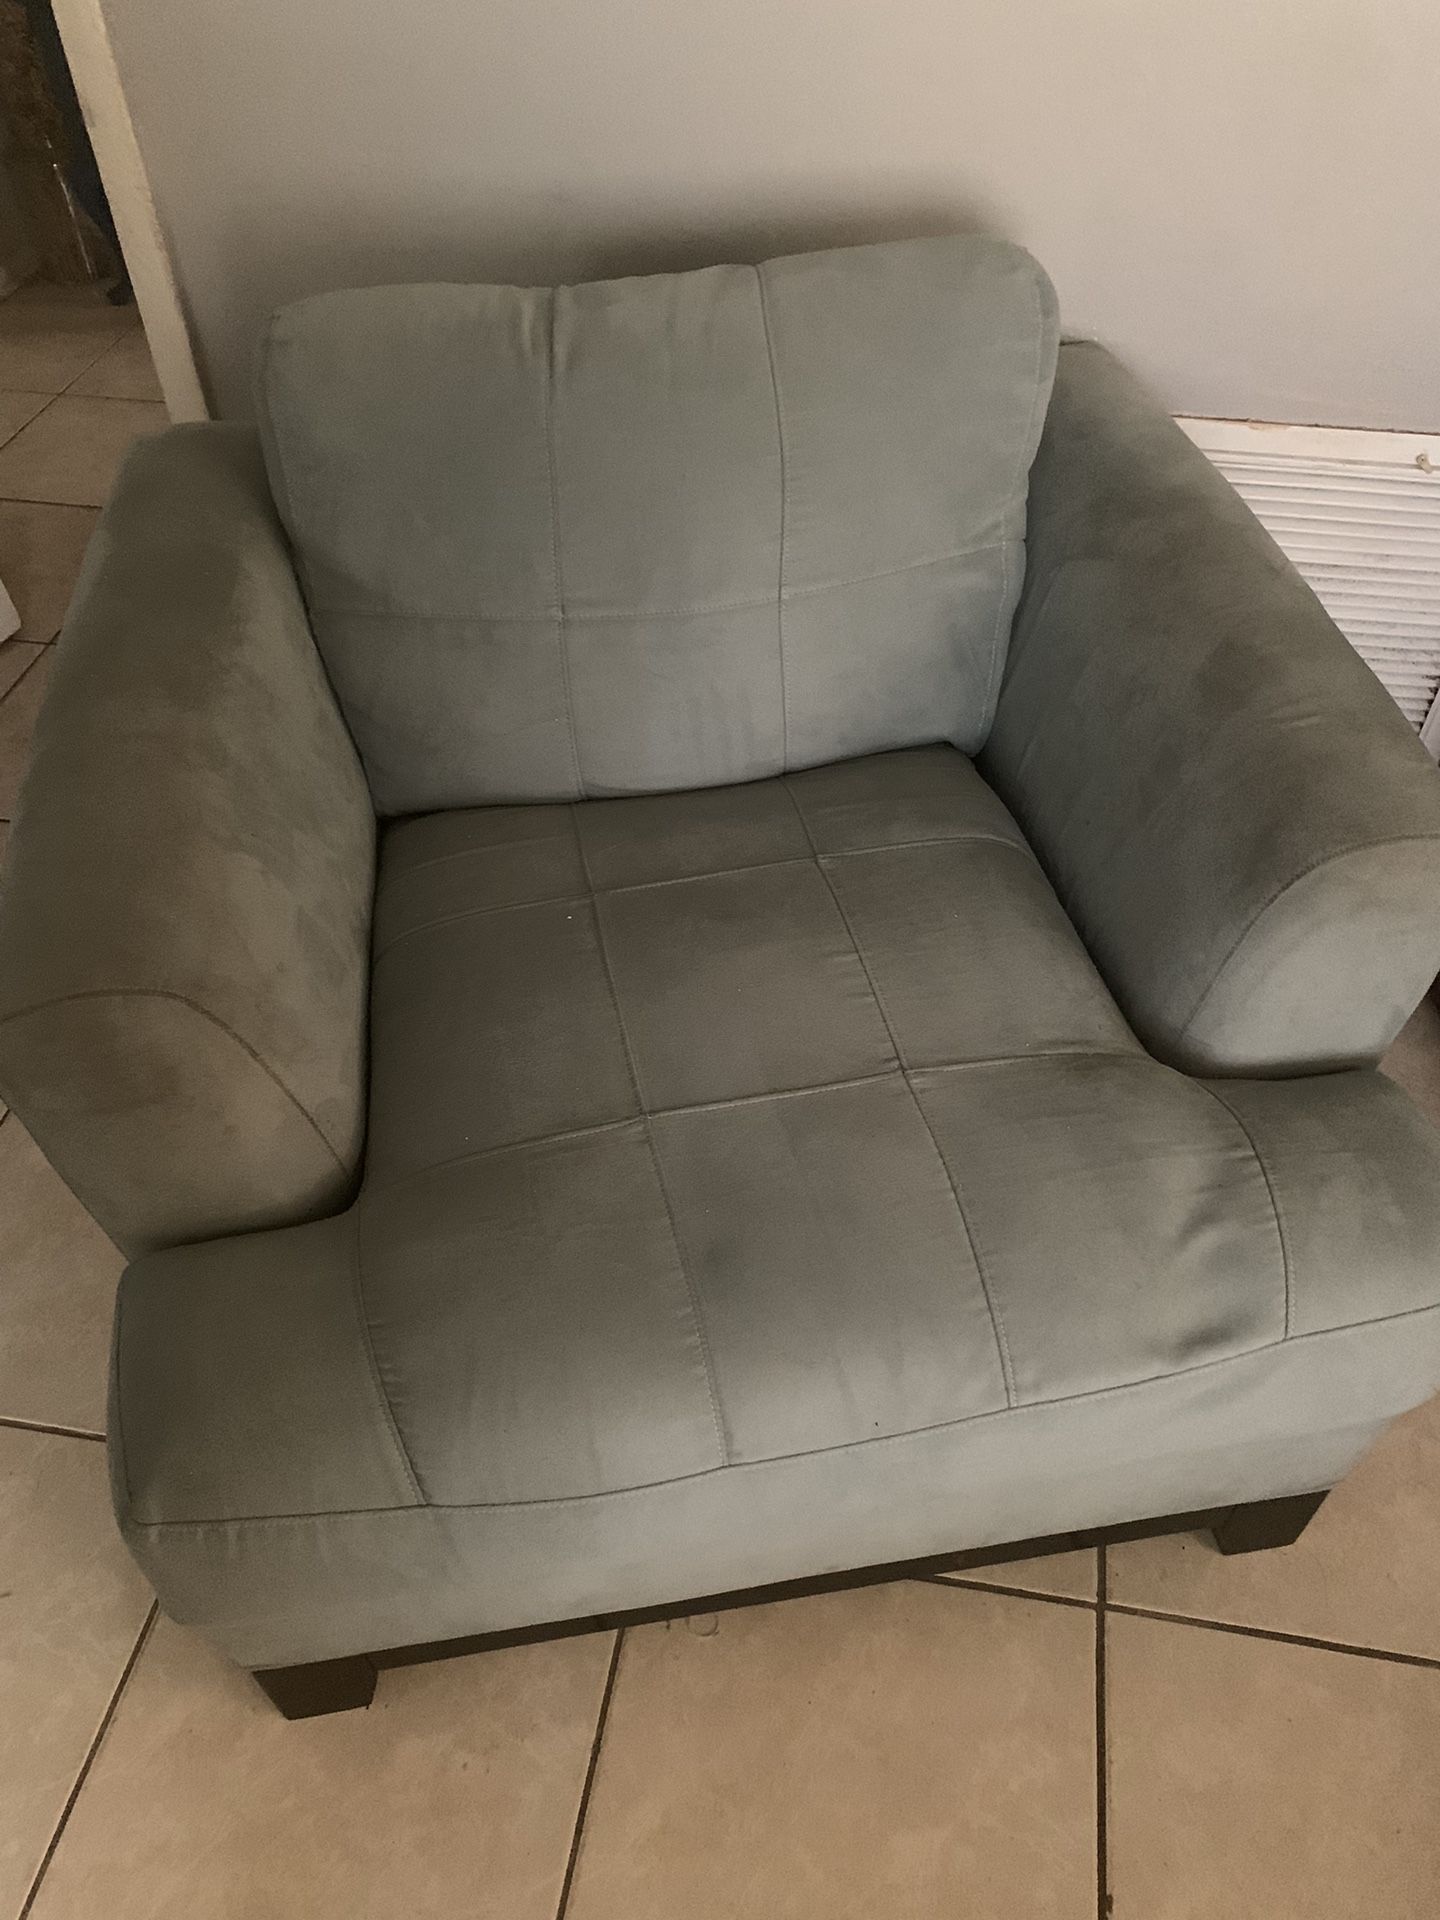 Living Room Set Sofa Chair Ottoman 